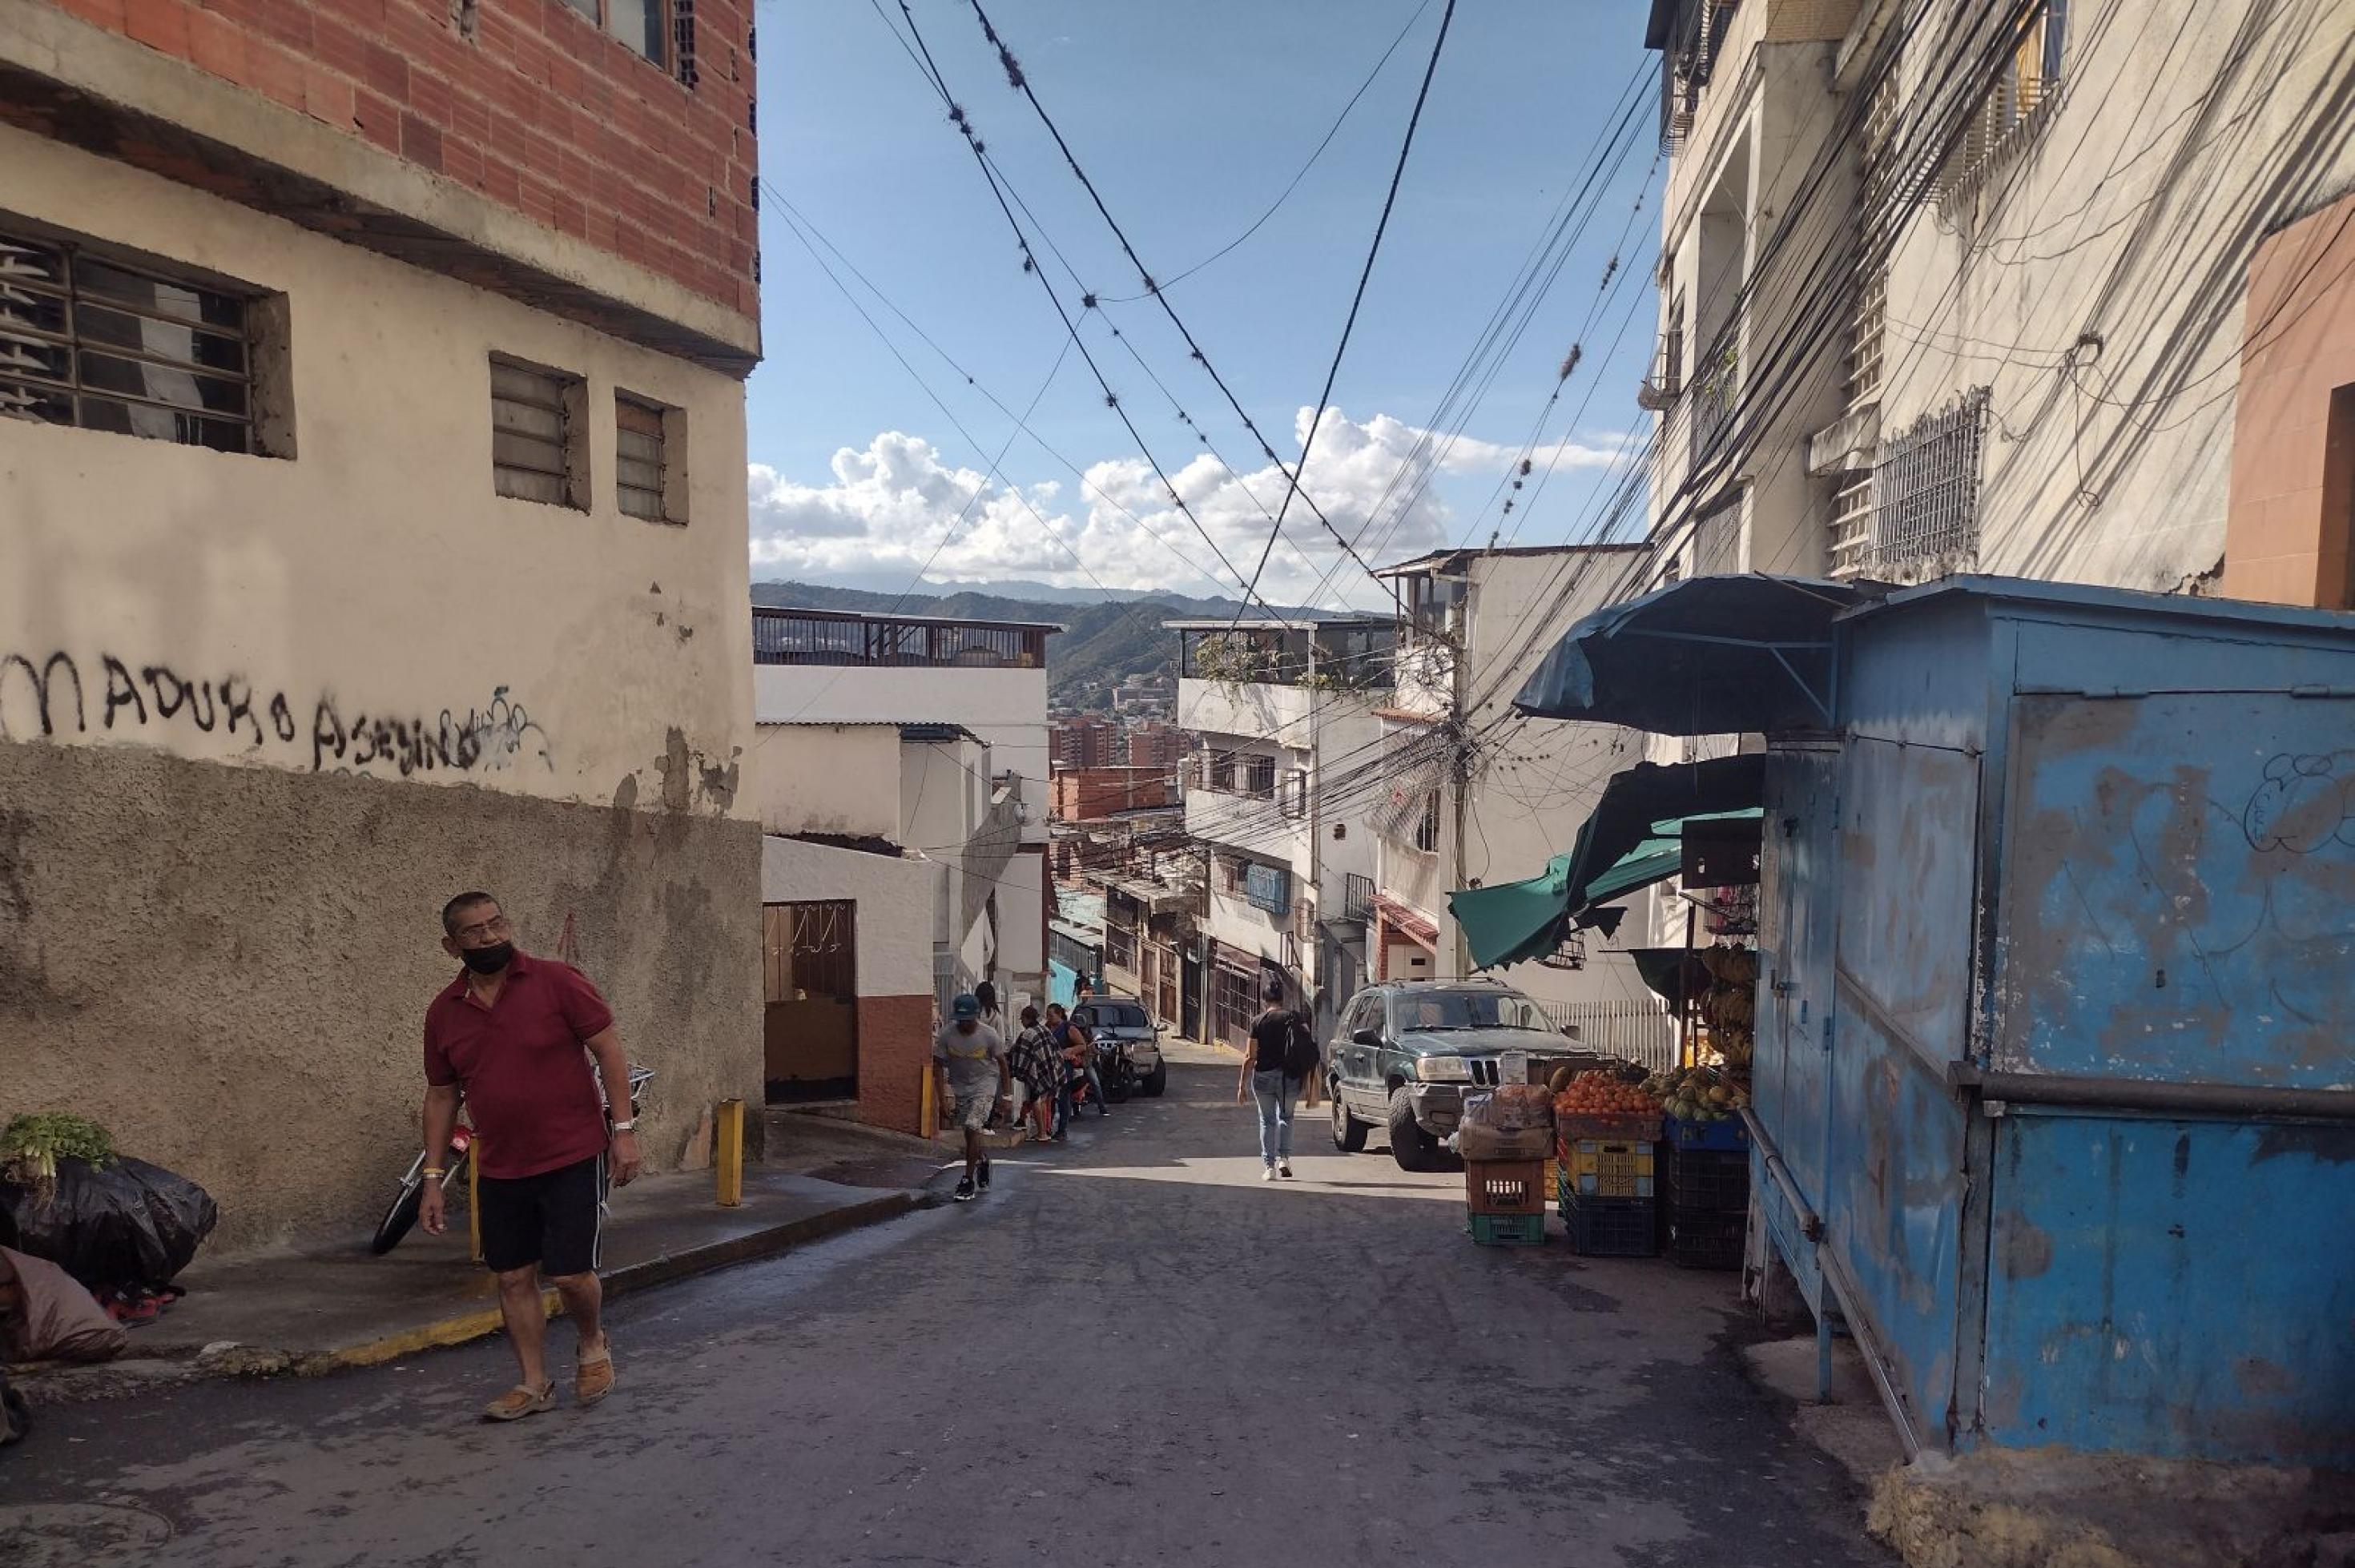 Enge Straße mit Blick auf Caracas, rechts und links ärmliche Häuser, darüber Stromleitungen. Ein Mann in kurzen Hosen läuft die Strasse hoch. An der Wand ein Graffiti: Maduro Mörder.